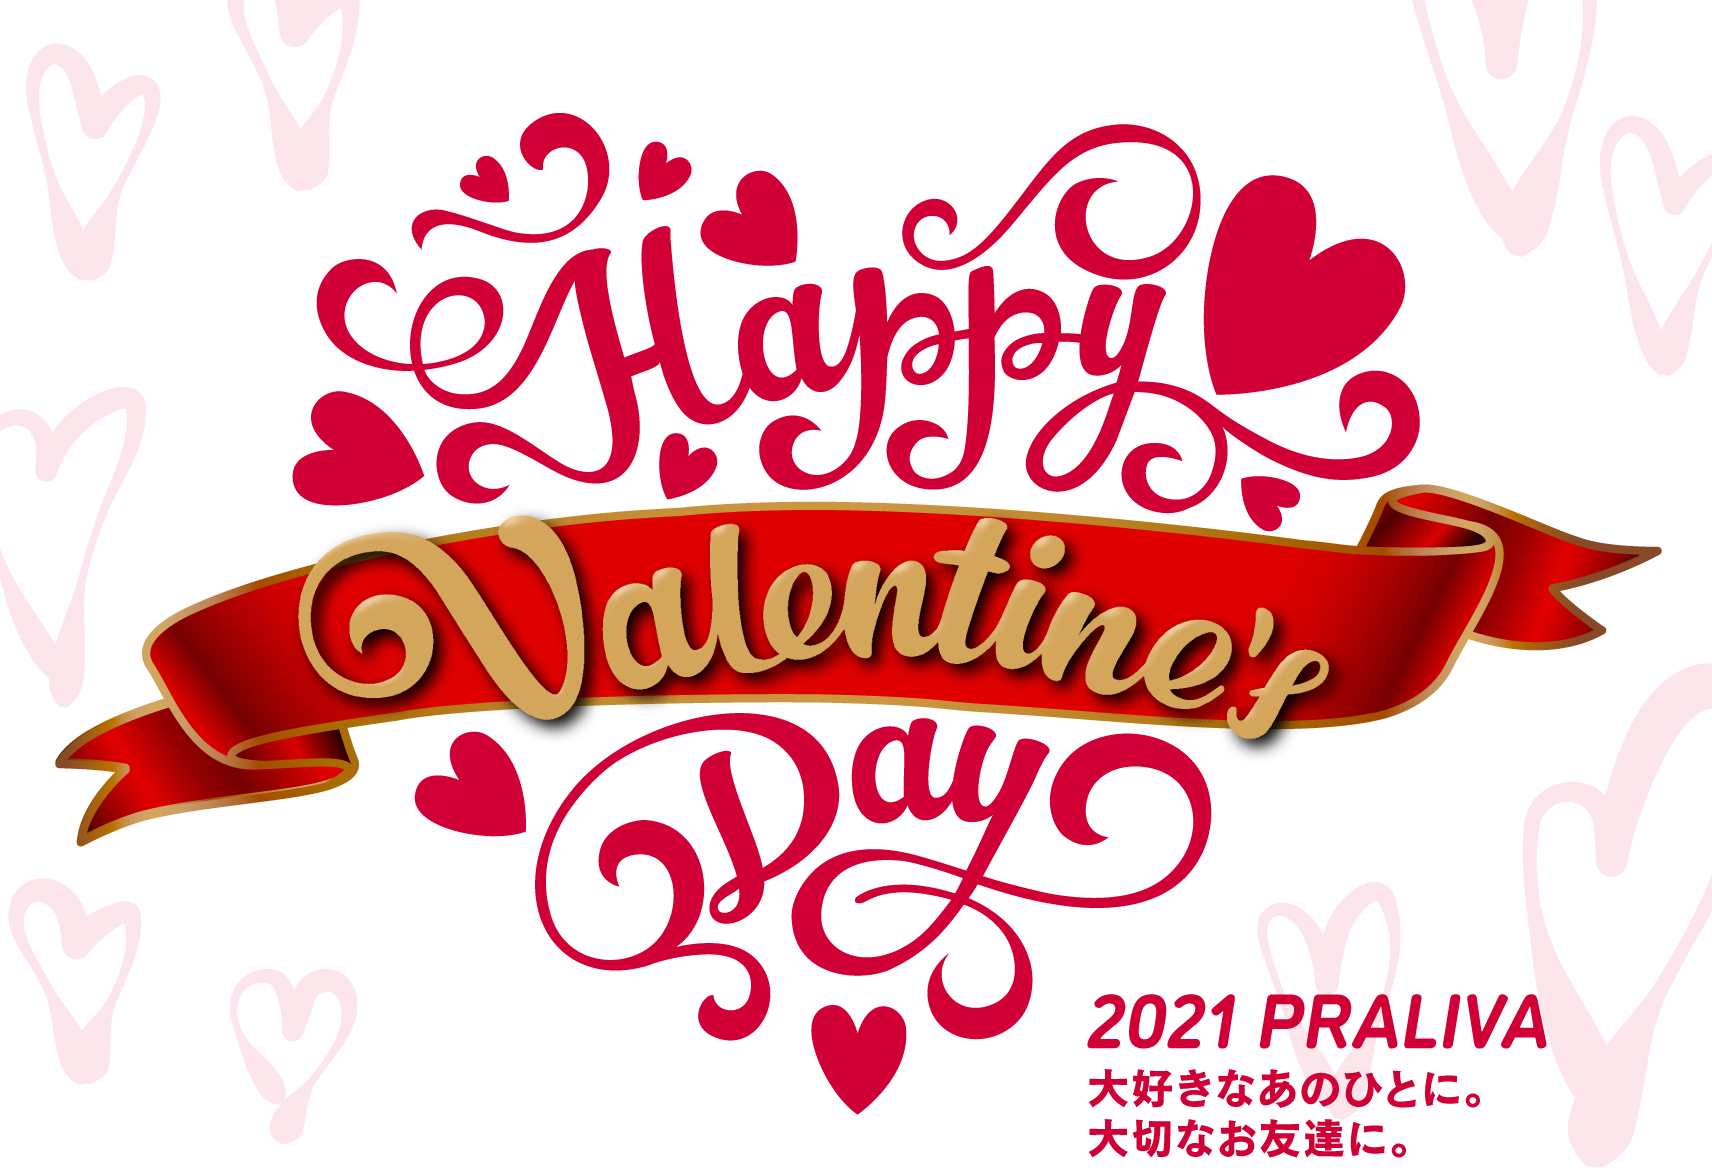 Happy Valentine S Day 21 Praliva プラリバ 西新 エルモールプラリバが新しくなって西新のまちに再登場